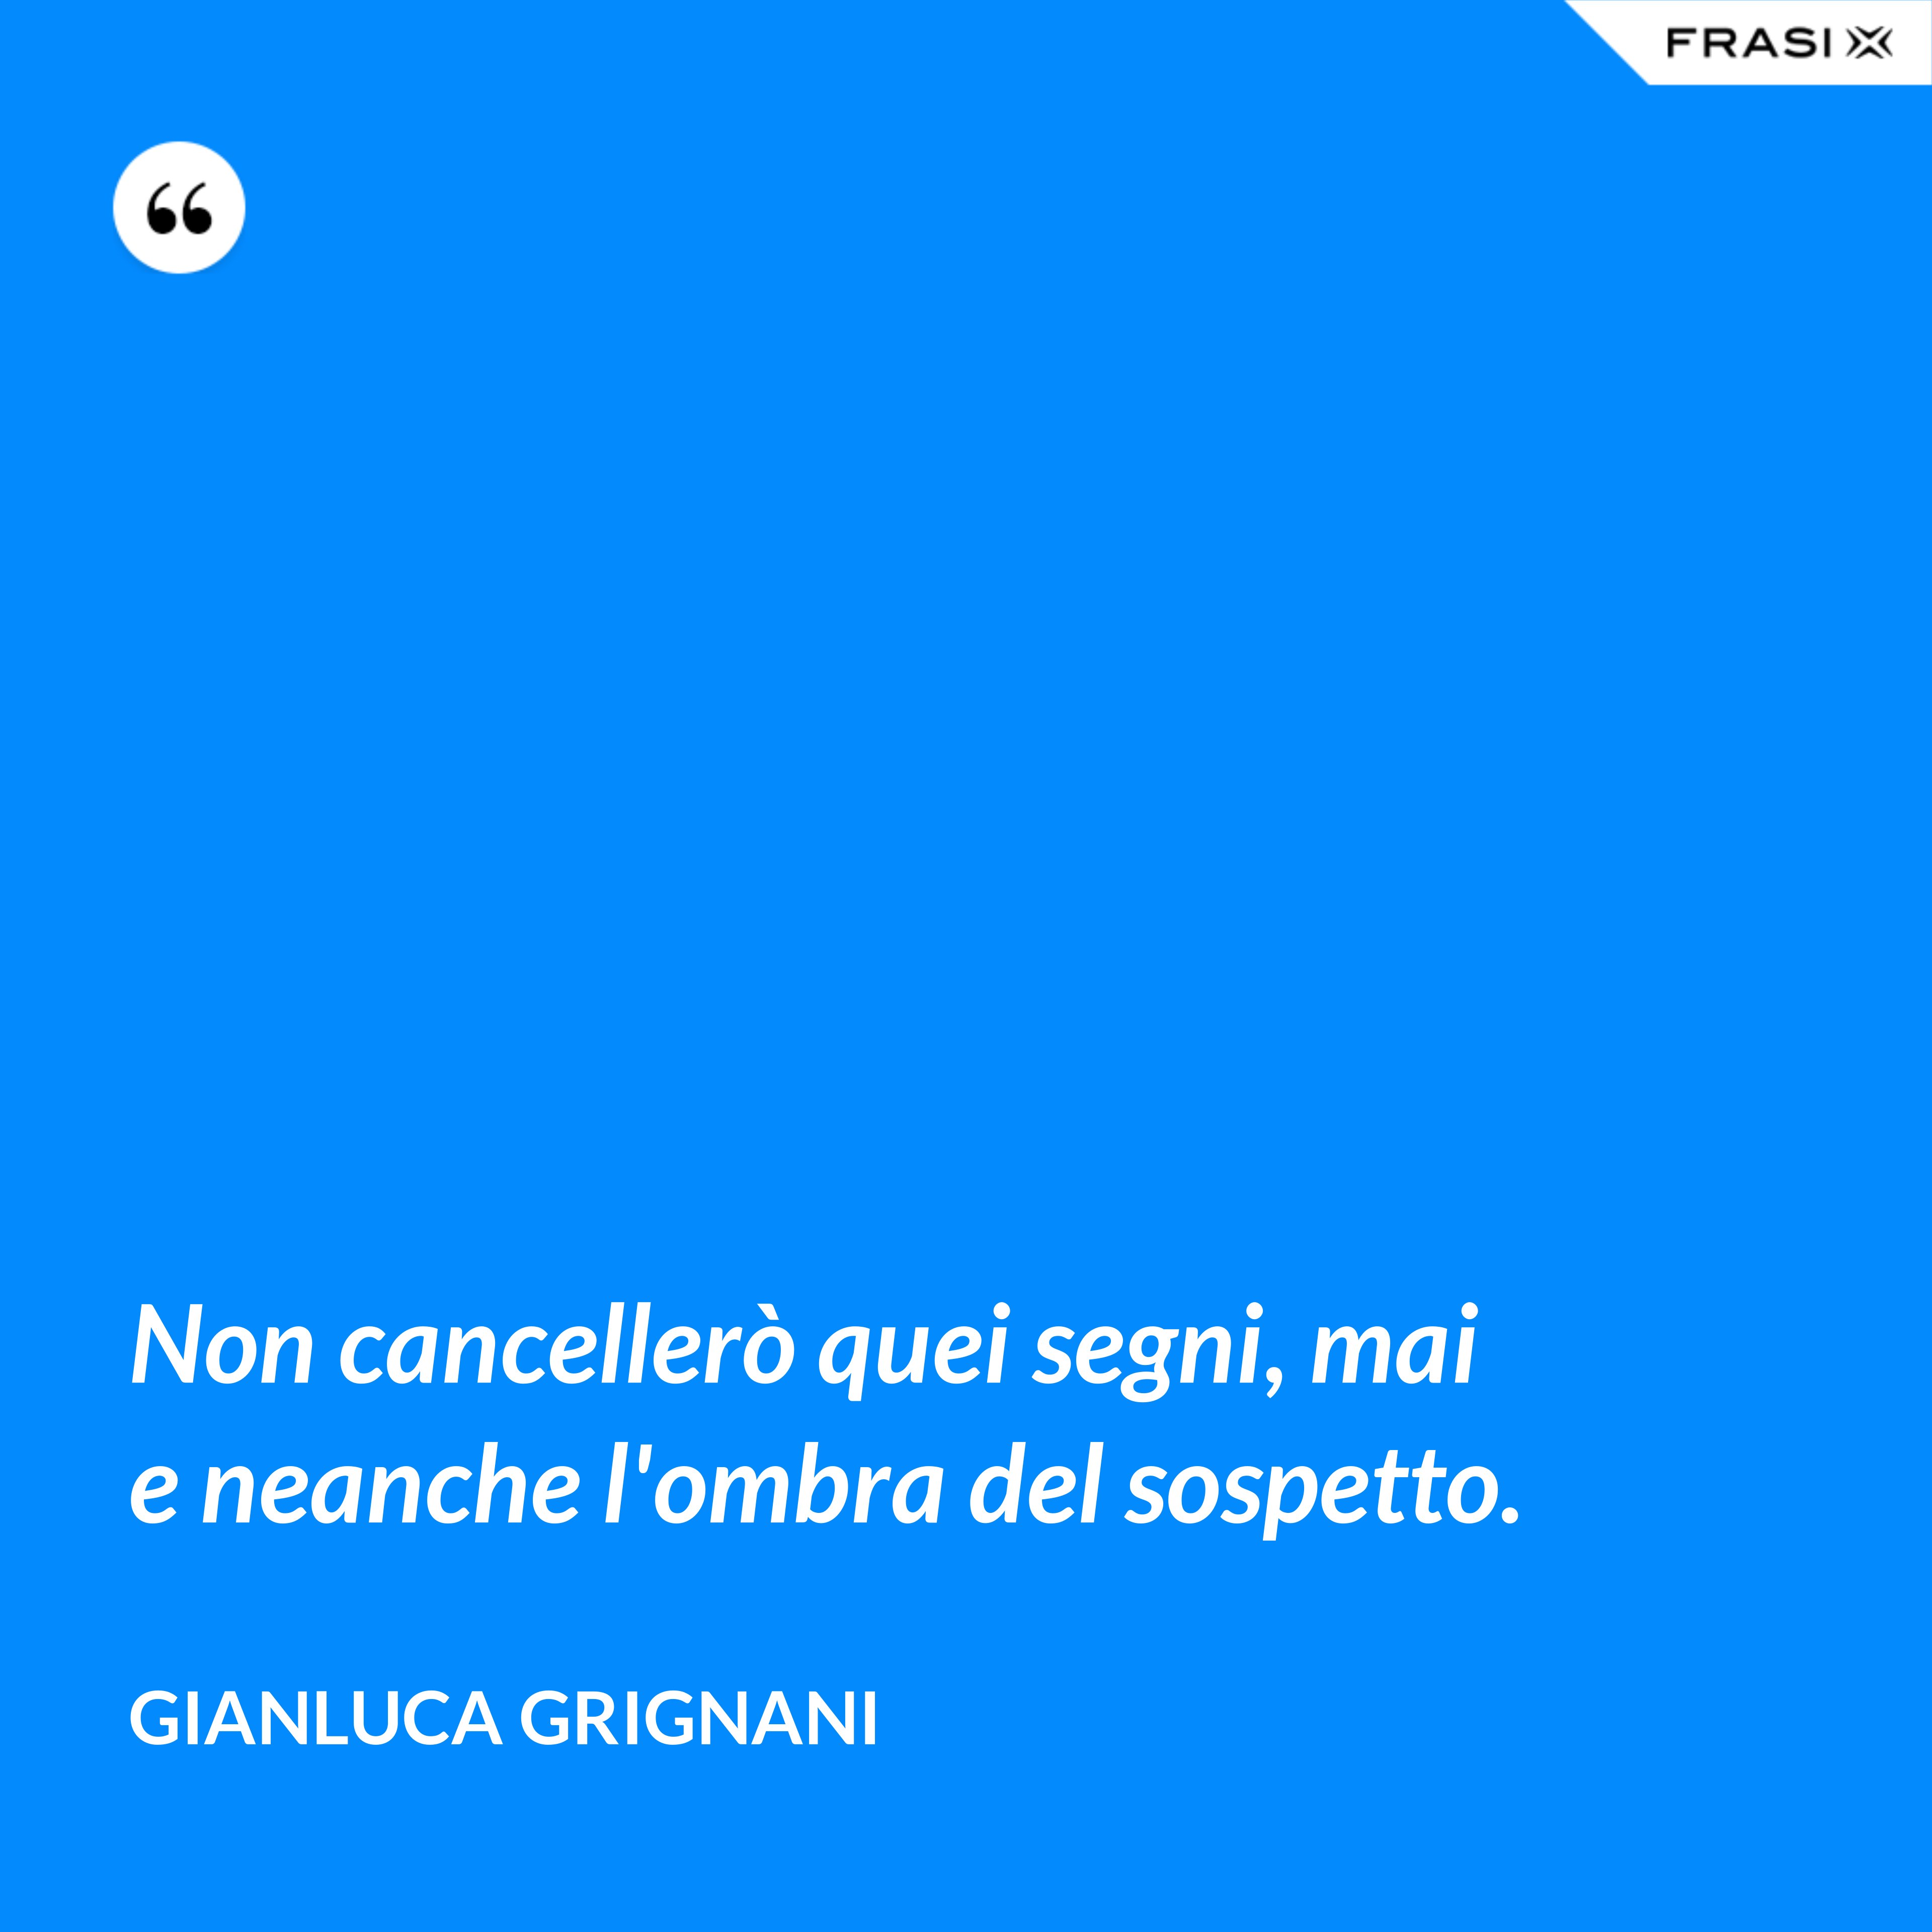 Non cancellerò quei segni, mai e neanche l'ombra del sospetto. - Gianluca Grignani